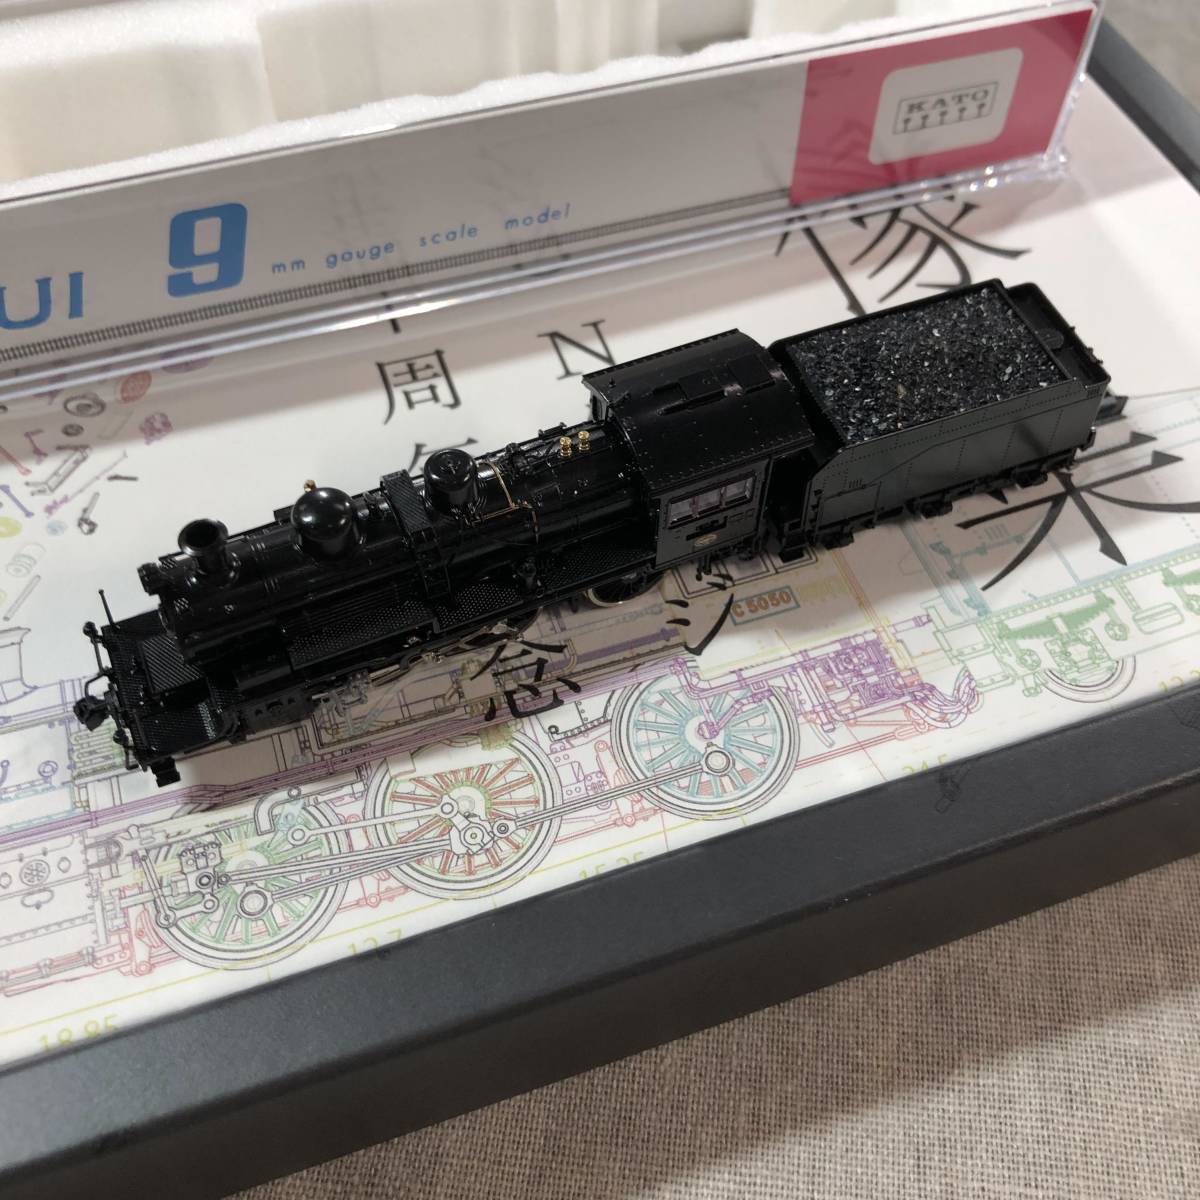 待望☆】 KATO 蒸気機関車 鉄道模型 2027 Nゲージ50周年記念製品 KATO C50 Nゲージ 機関車 -  portalcultura.net.br